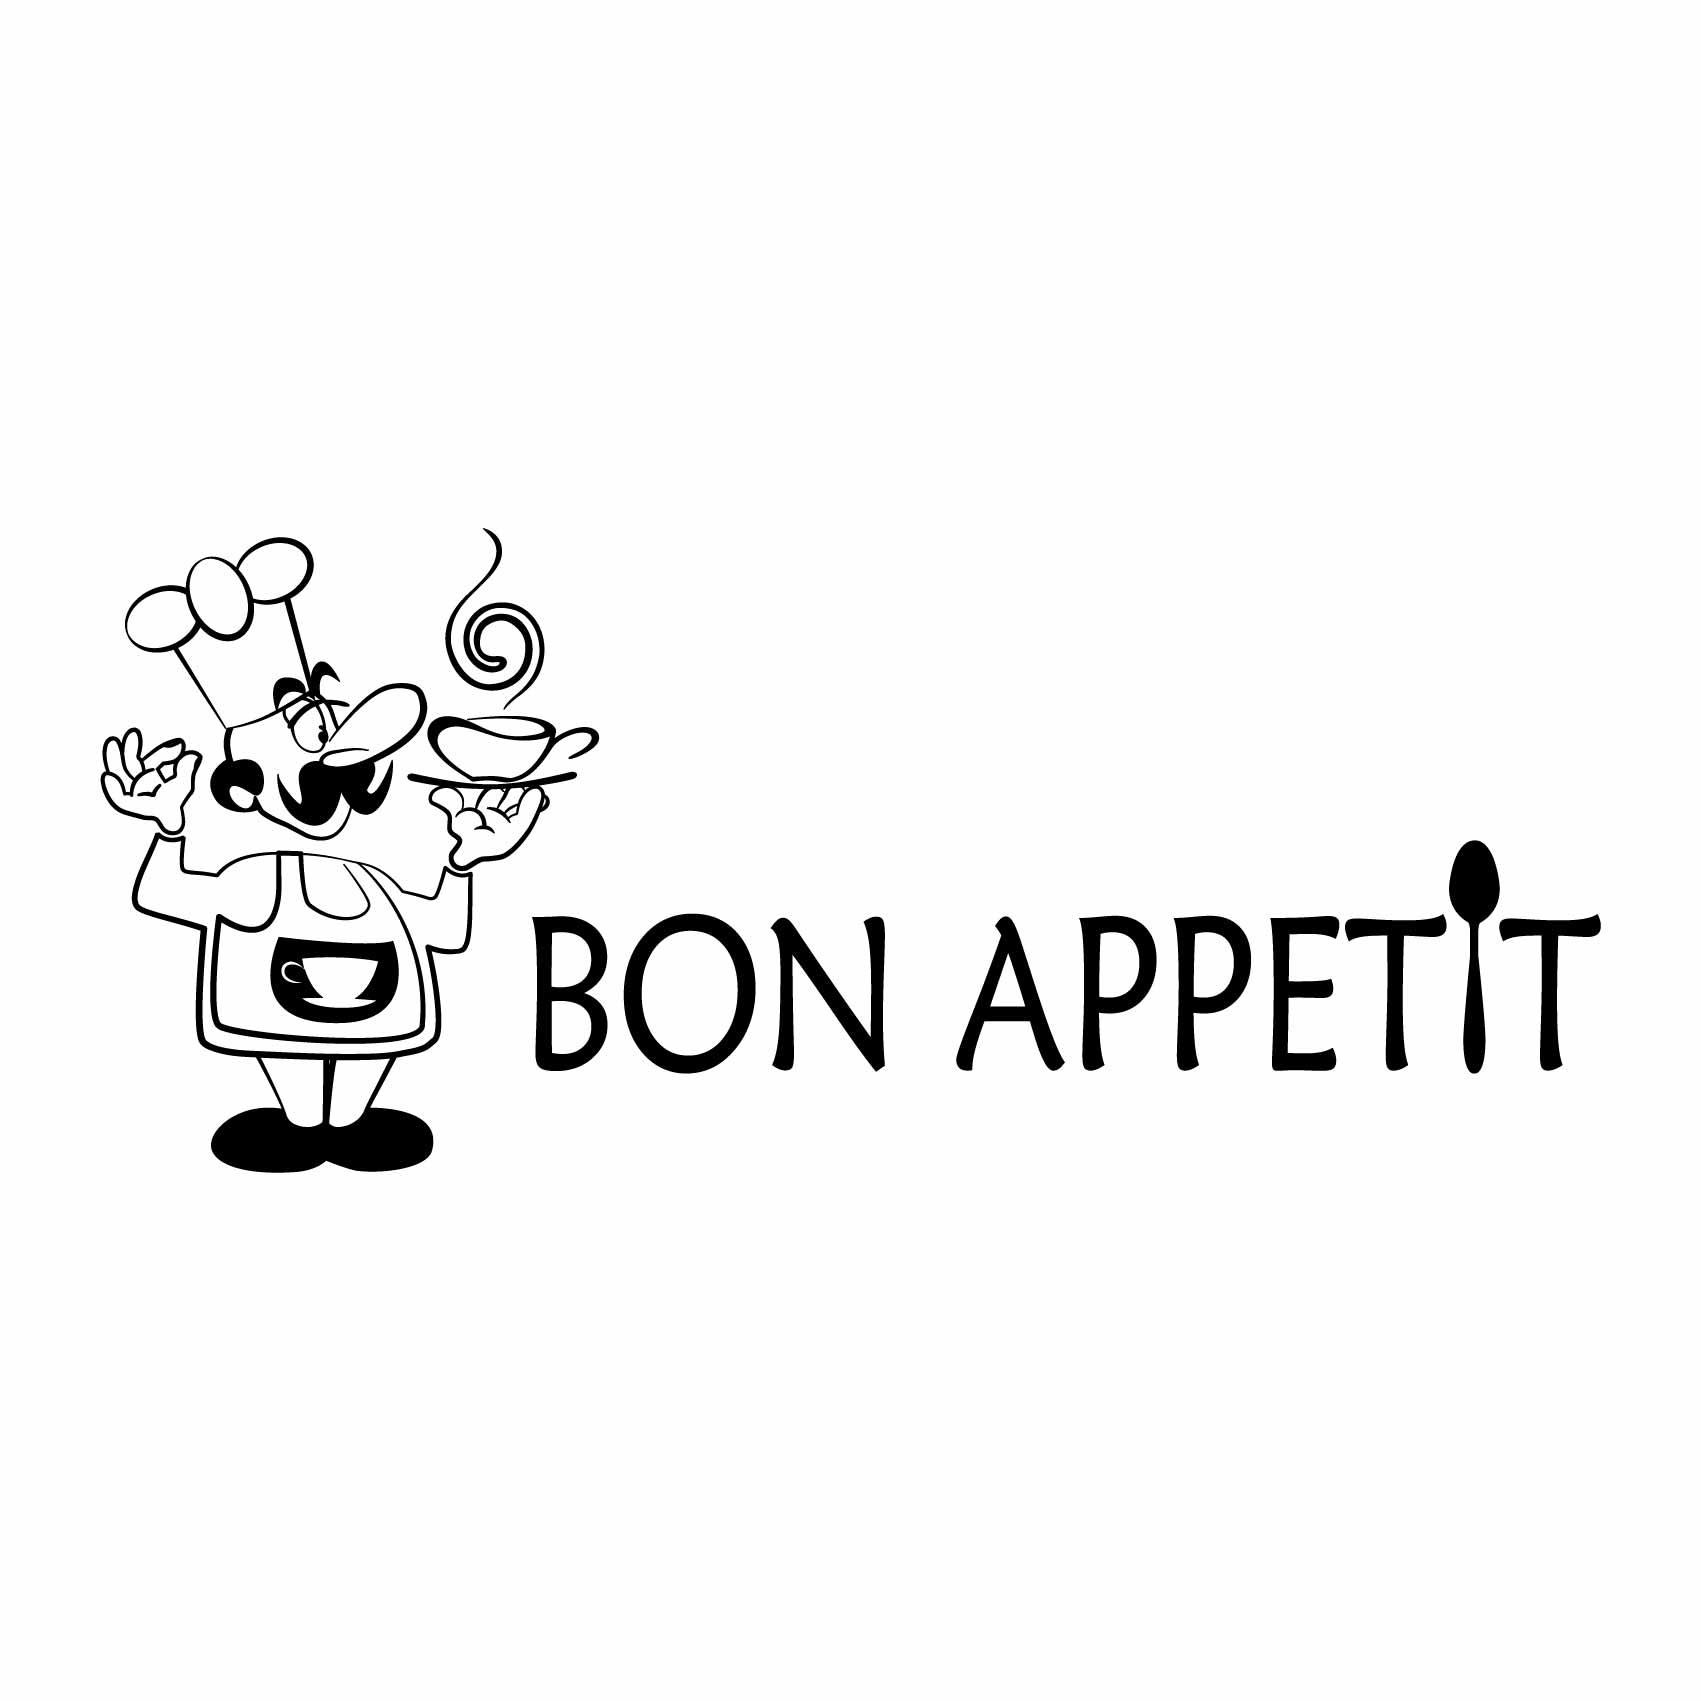 stickers-cuisine-bon-appetit-ref19cuisine-autocollant-muraux-cuisine-kitchen-sticker-mural-deco-decoration-(2)